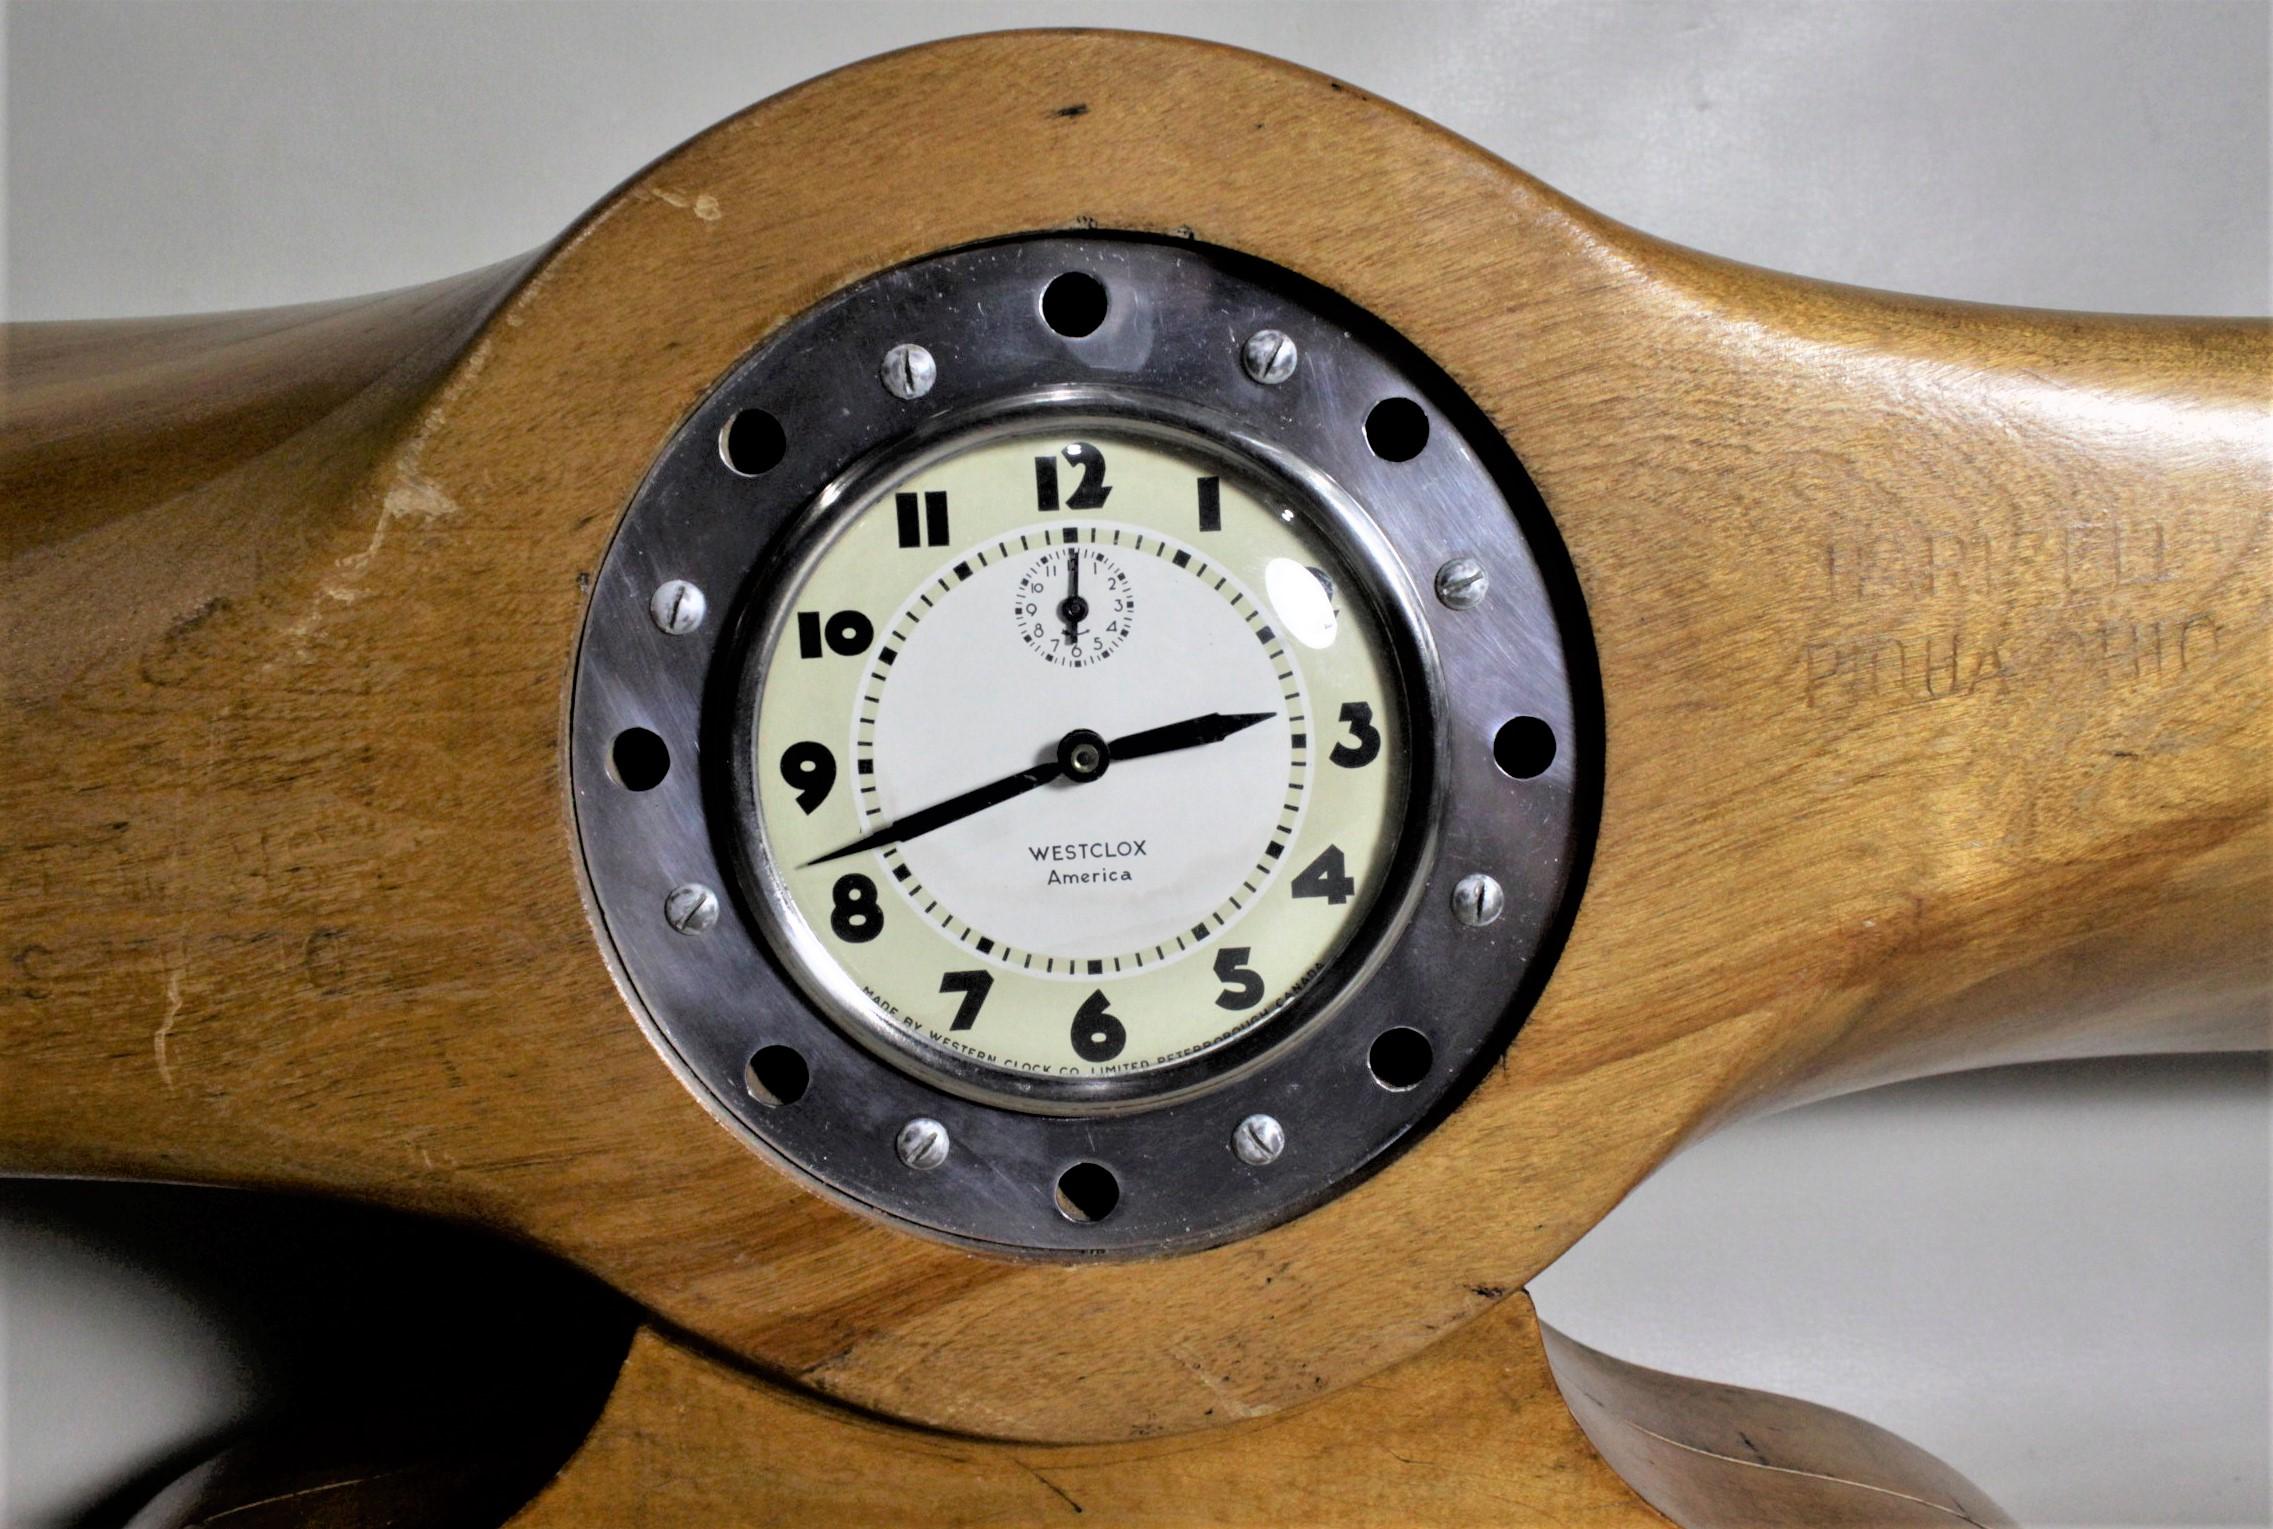 Cette horloge à hélice en bois, qui relève de l'art populaire, serait originaire d'Angleterre et aurait été transformée en horloge de cheminée en Amérique du Nord vers 1960. L'hélice a été découpée, une base en bois a été ajoutée et un mouvement